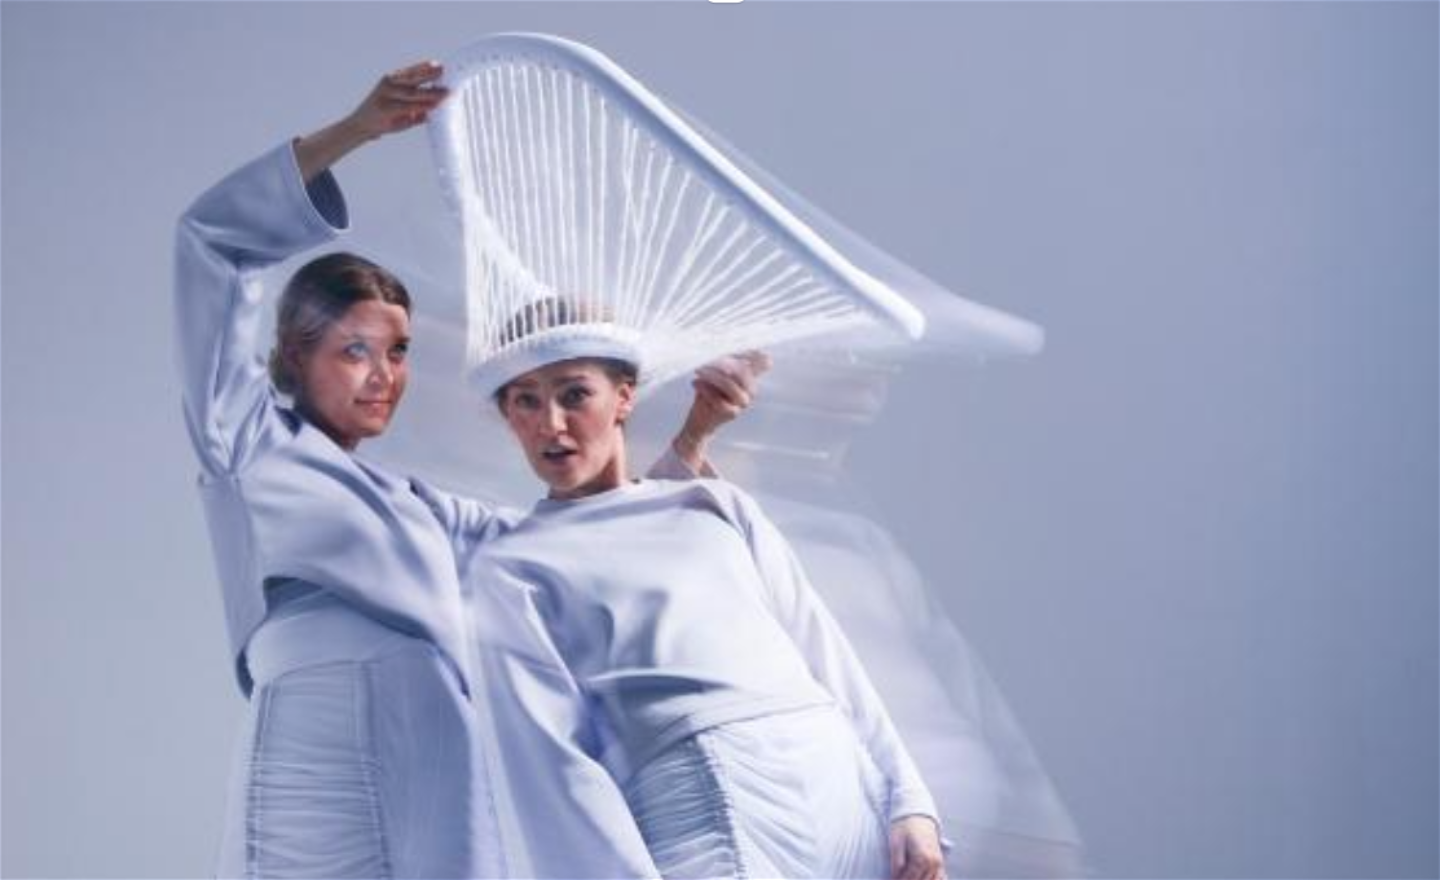 Två vitklädda dansare. Den ena med överraska uppsyn och vit svamphatt på huvudet